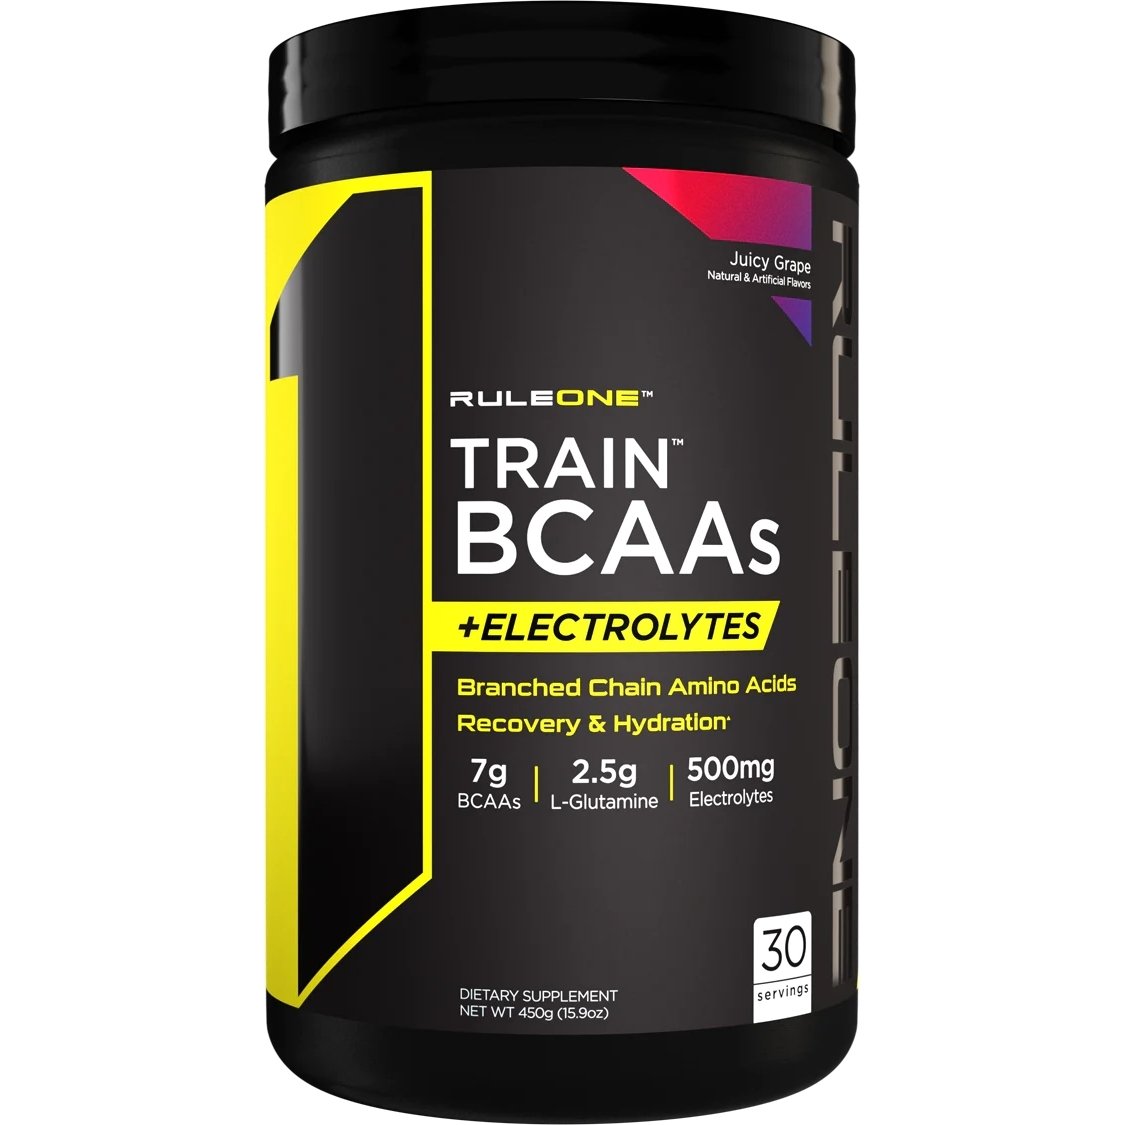 Аминокислота BCAA Rule 1 Train BCAAs + Electrolytes, 450 грамм Виноград,  ml, Rule One Proteins. BCAA. Weight Loss स्वास्थ्य लाभ Anti-catabolic properties Lean muscle mass 